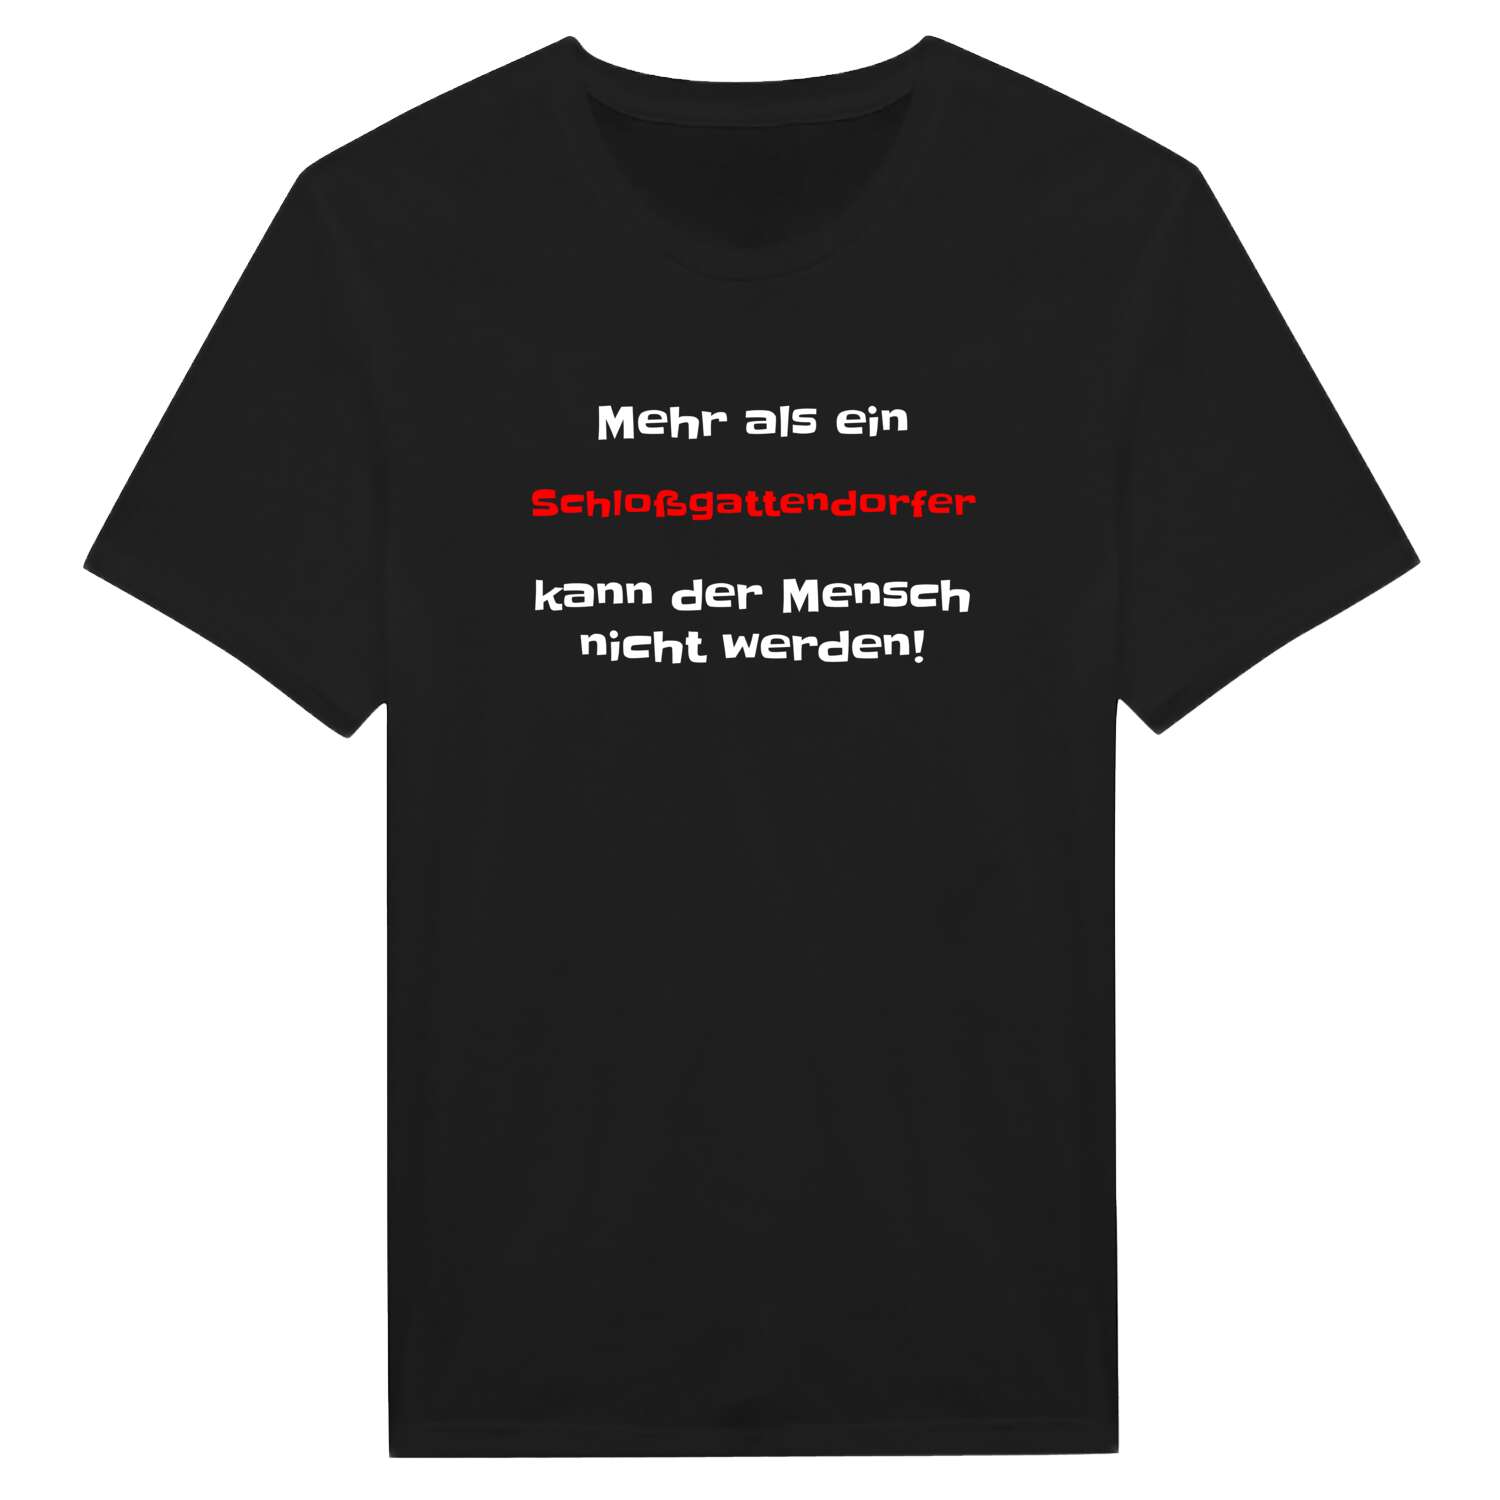 Schloßgattendorf T-Shirt »Mehr als ein«